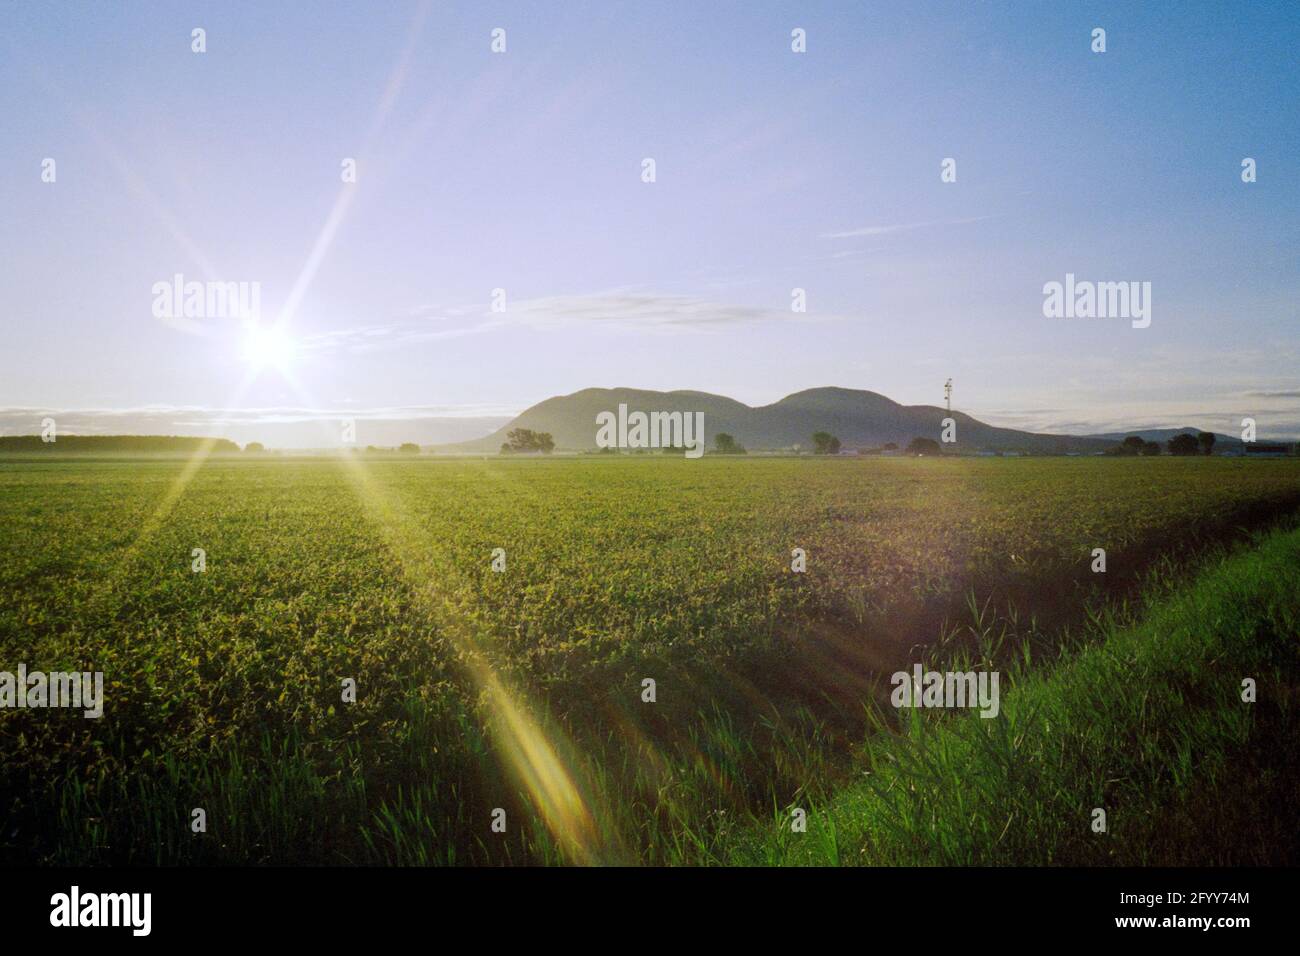 Les terres agricoles de montagne et le soleil se déferle du côté de la route, Beloeil (Québec), Canada, 2020 Banque D'Images